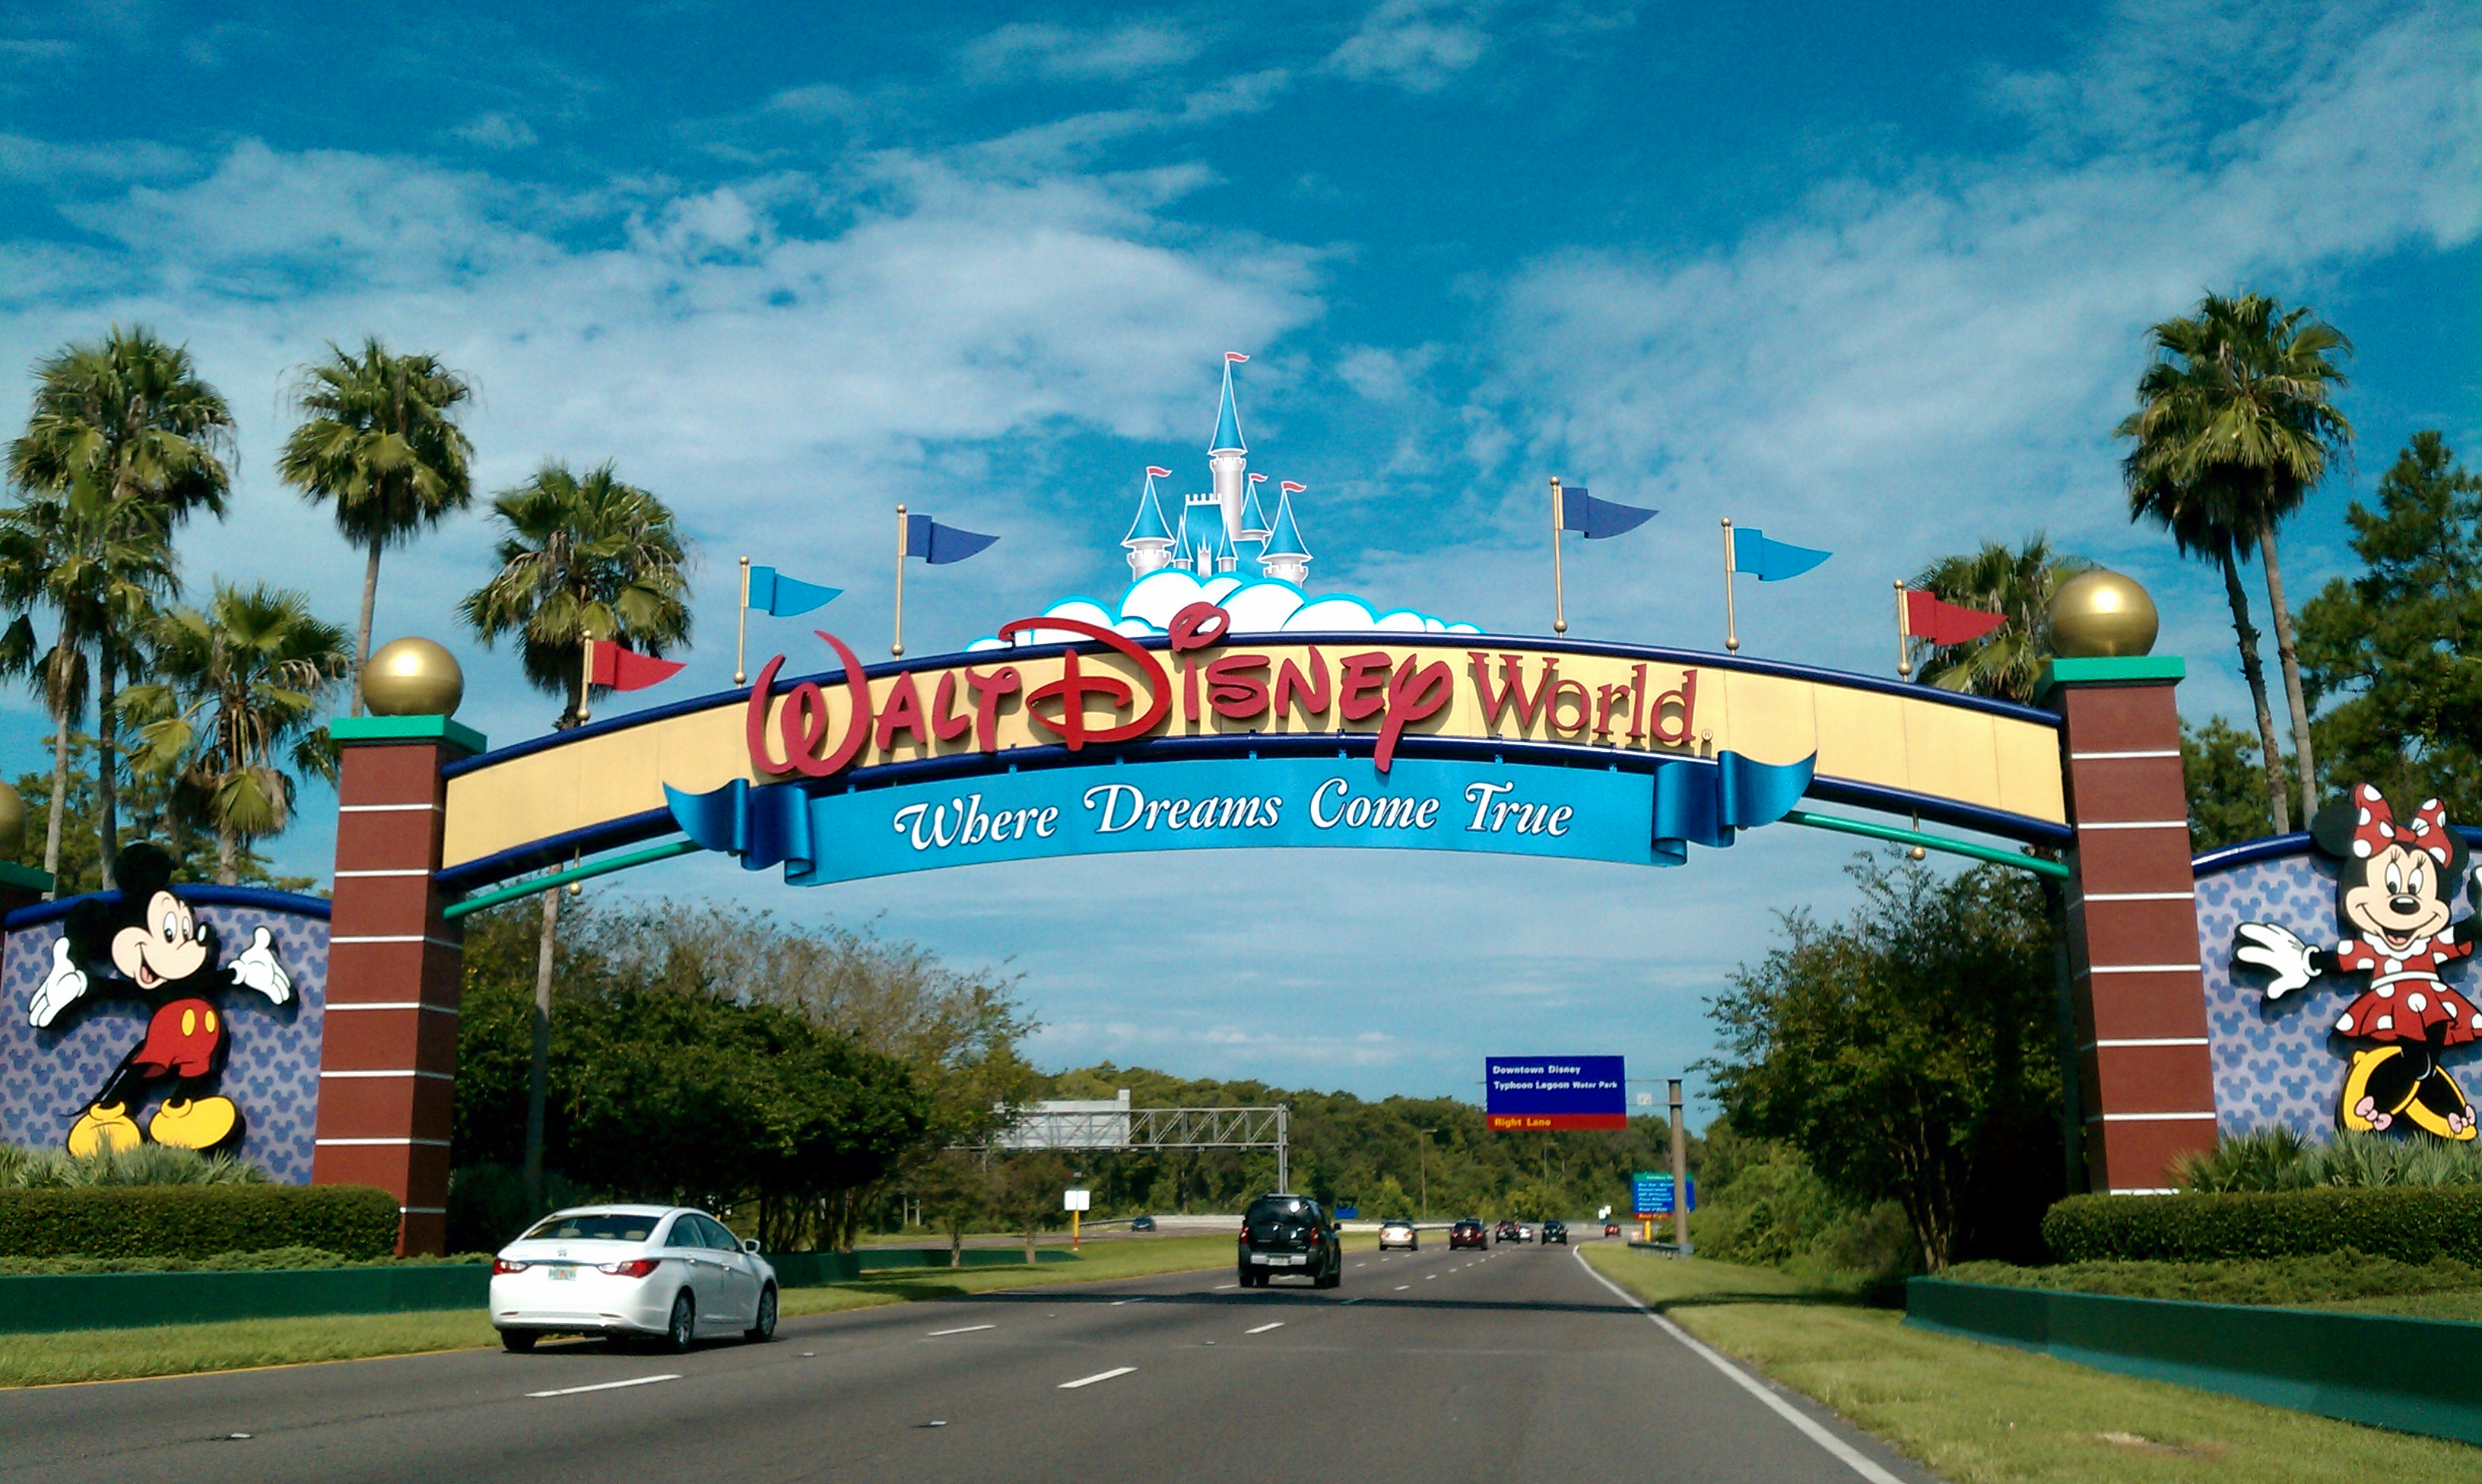 Venta de pases anuales fue suspendida por Walt Disney World